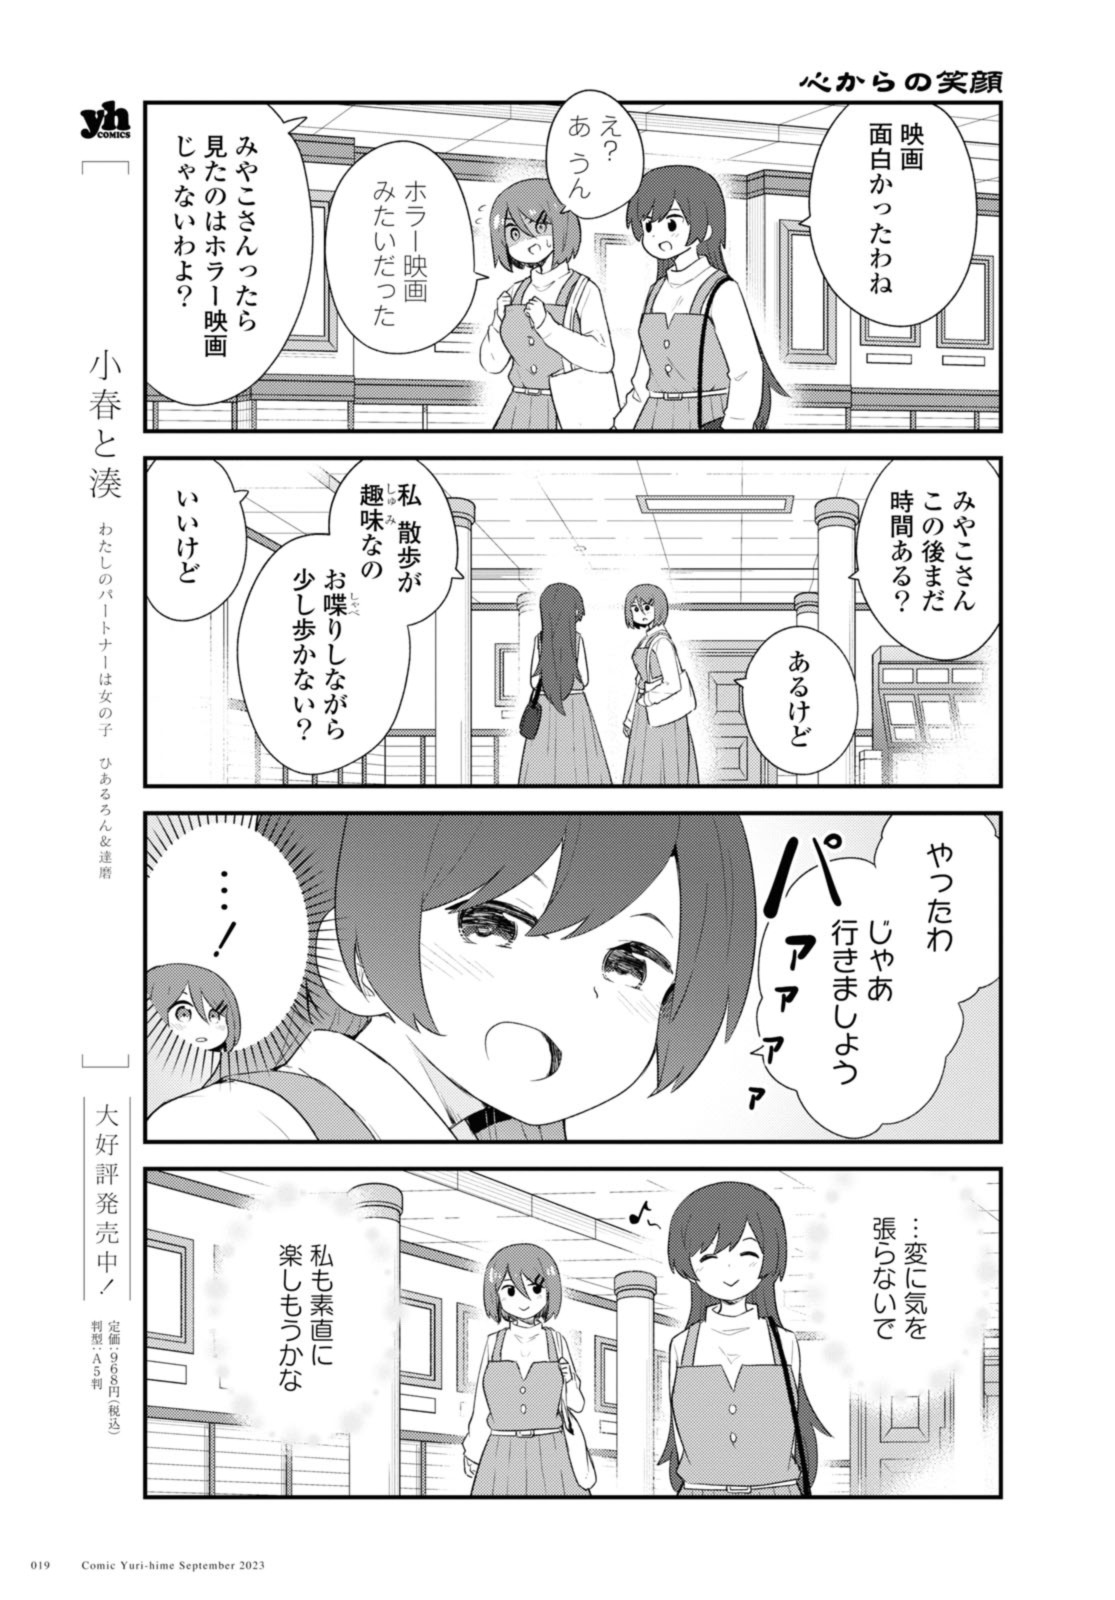 Watashi ni Tenshi ga Maiorita! - Chapter 108.2 - Page 3